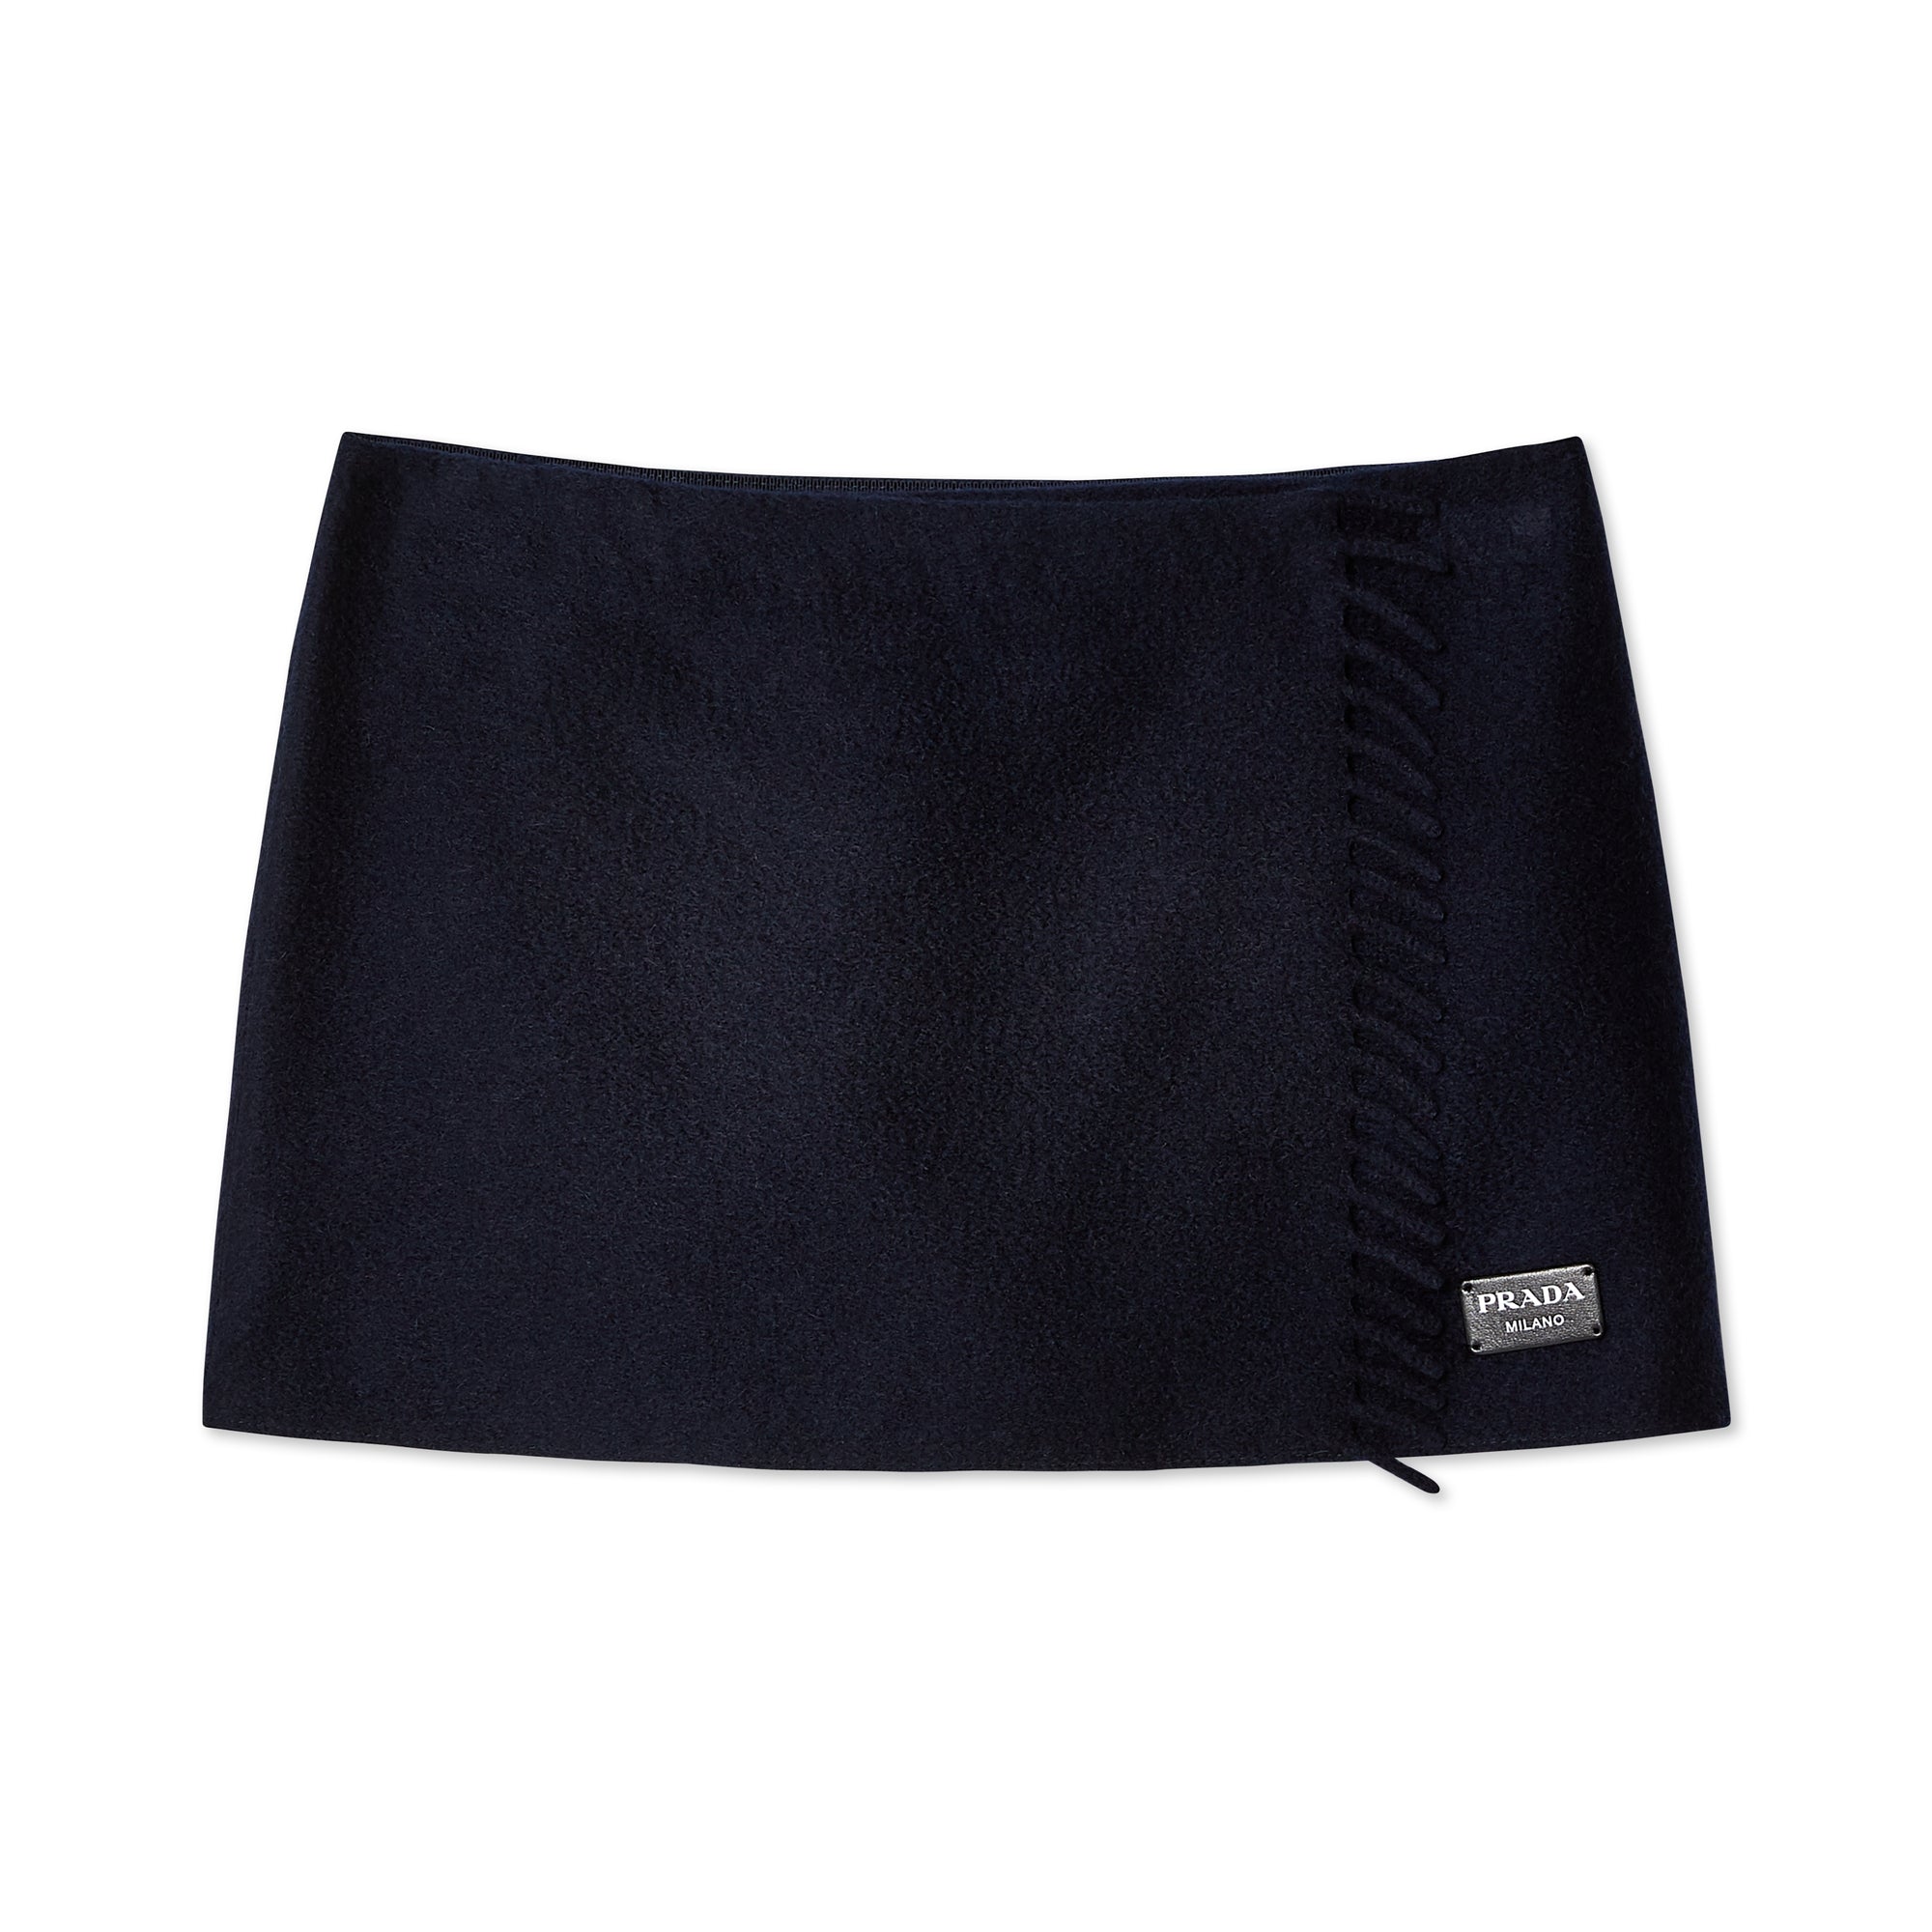 Prada - Women’s Wrap Skirt - (Navy) view 1